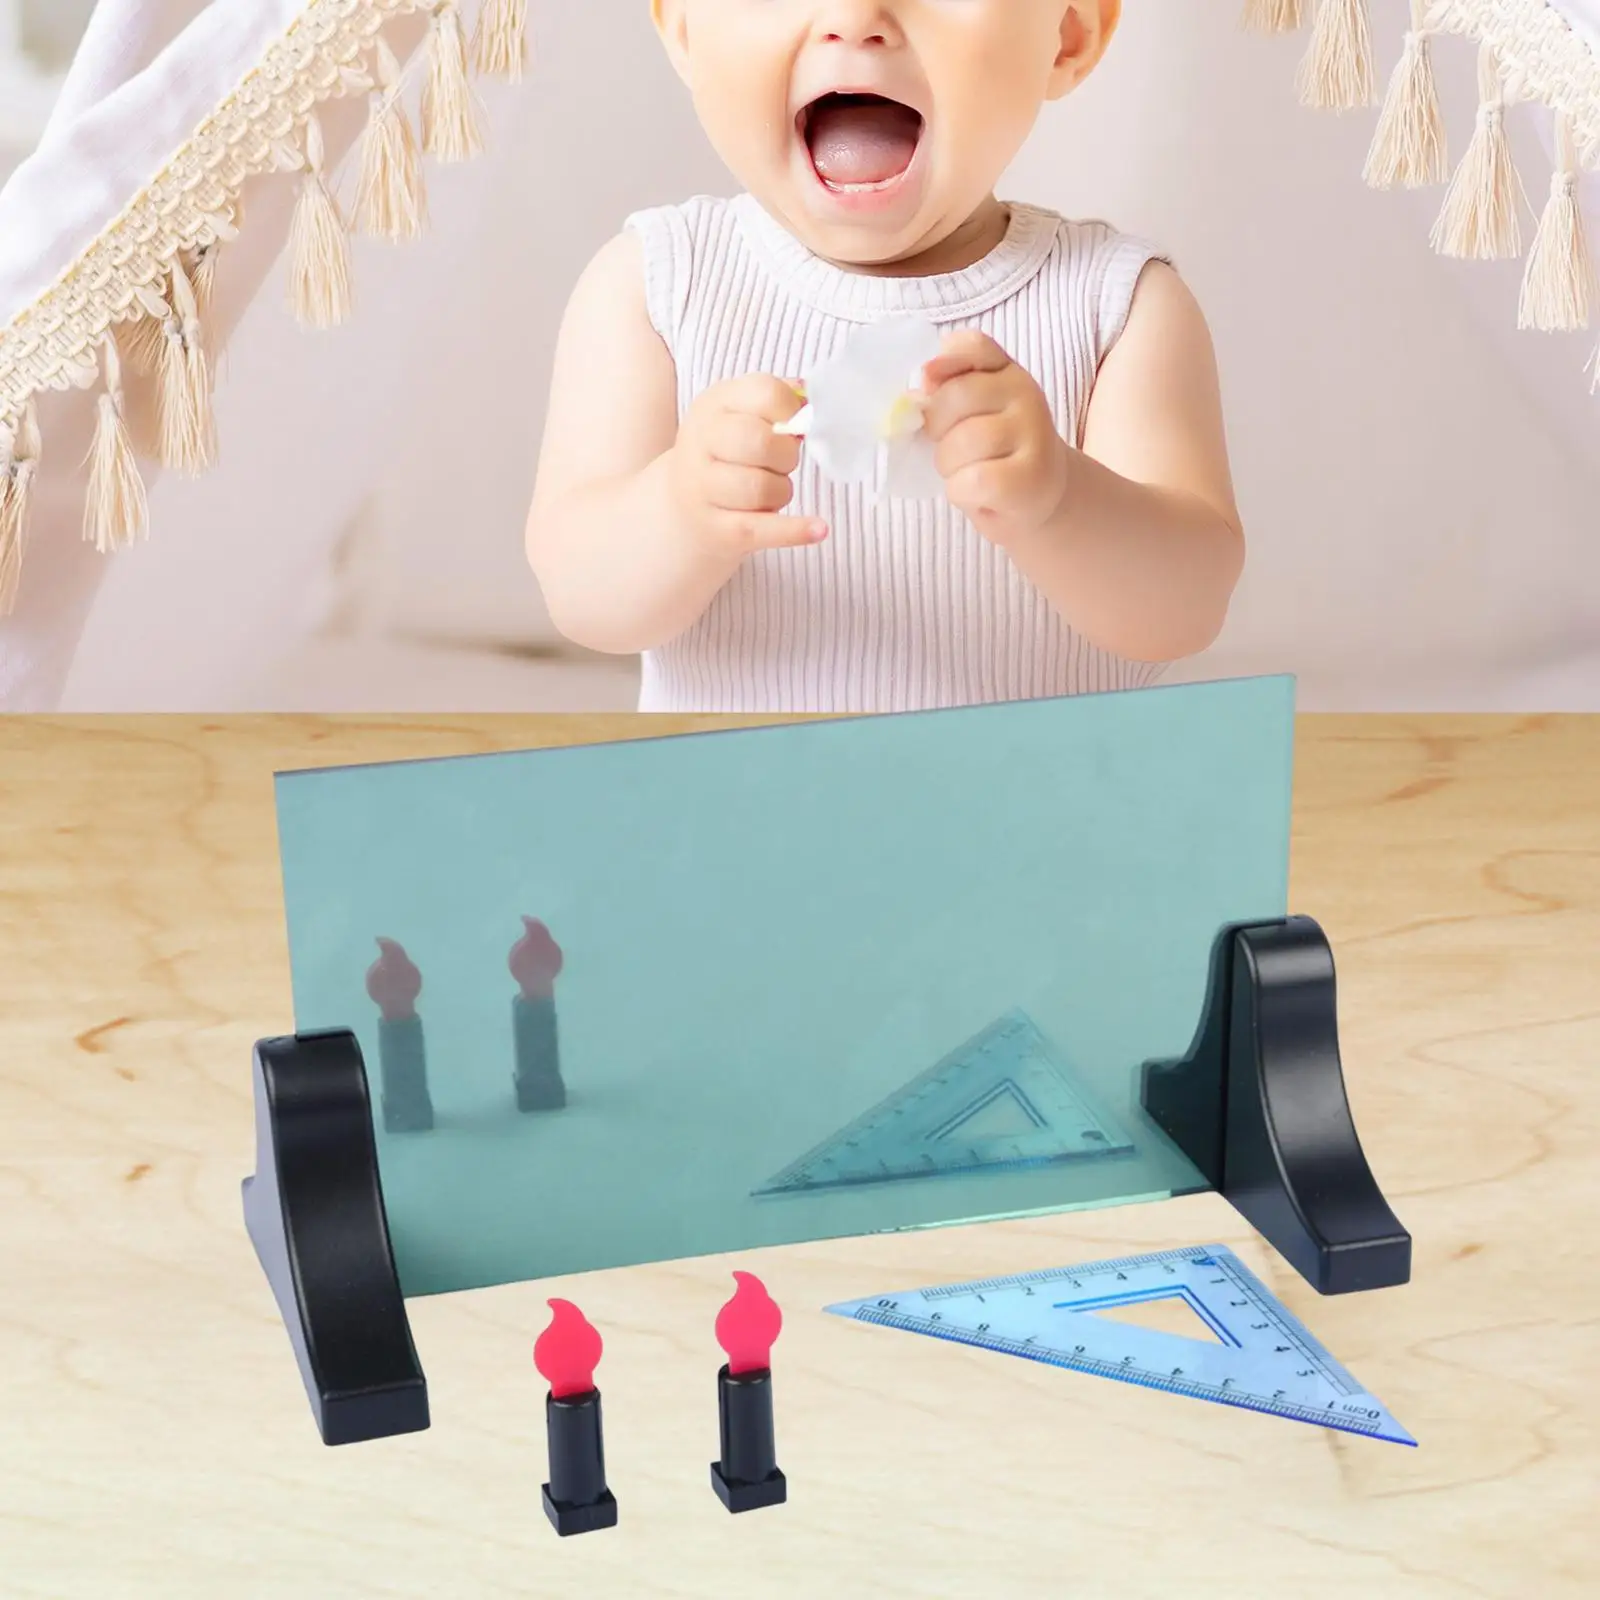 Düzlem Ayna Görüntüleme Cihazı eğitici oyuncak Düzlem Ayna Görüntüleme Gösterici Fiziksel Optik Deney Kız Erkek Çocuklar için